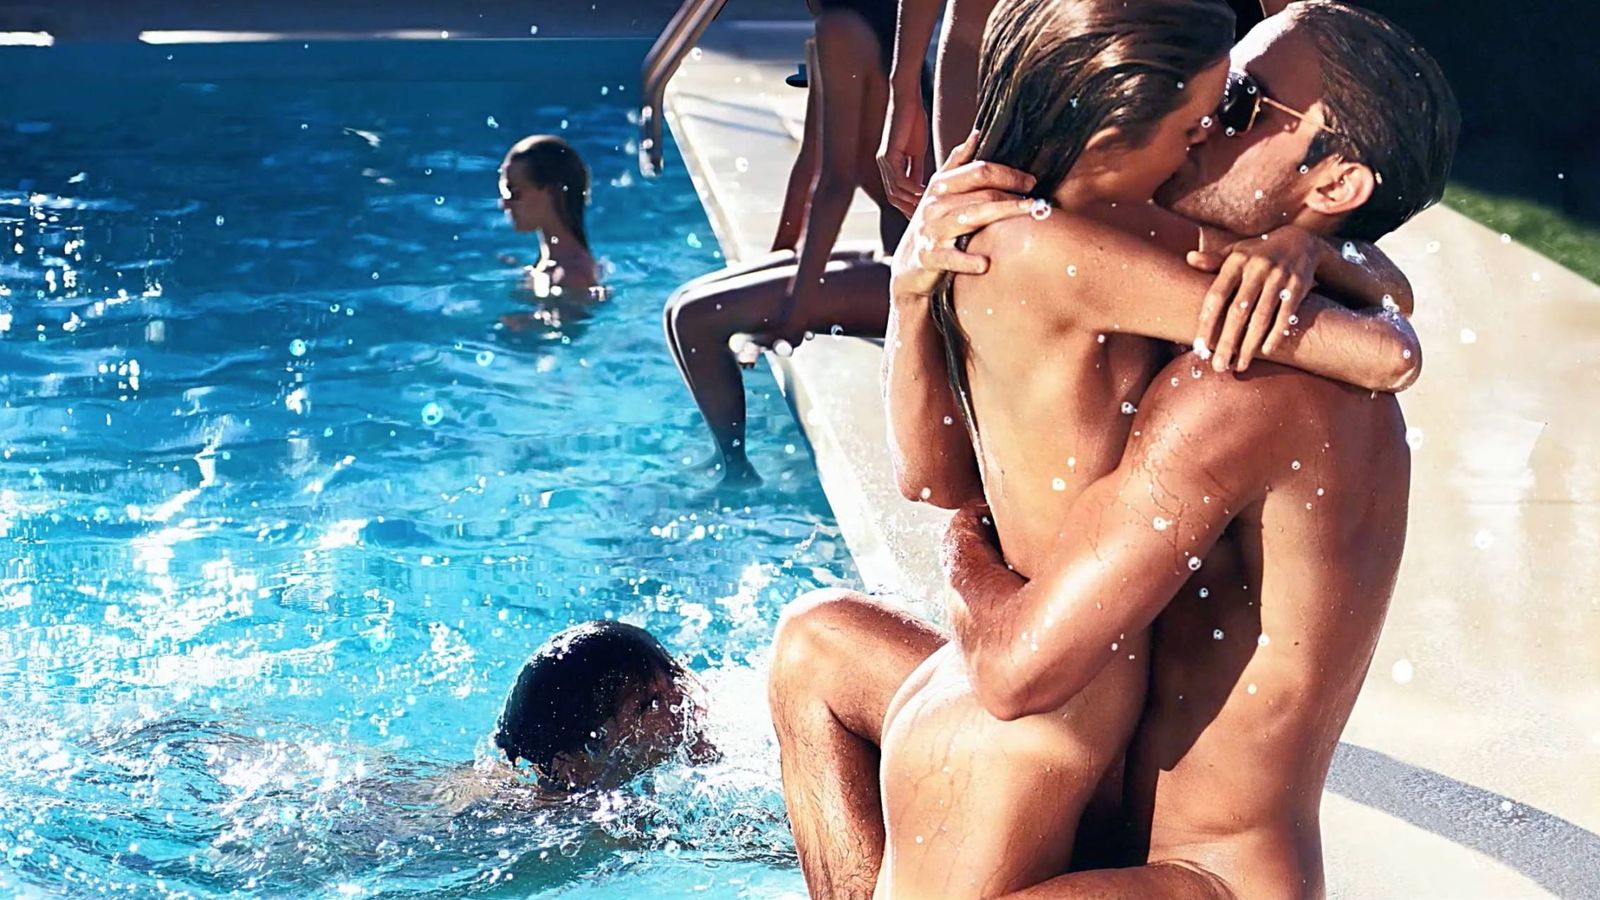 Foto: De escena hot a infierno real. ¿Cuáles son los riesgos que entraña practicar sexo en el agua? (Foto: Tom Ford)